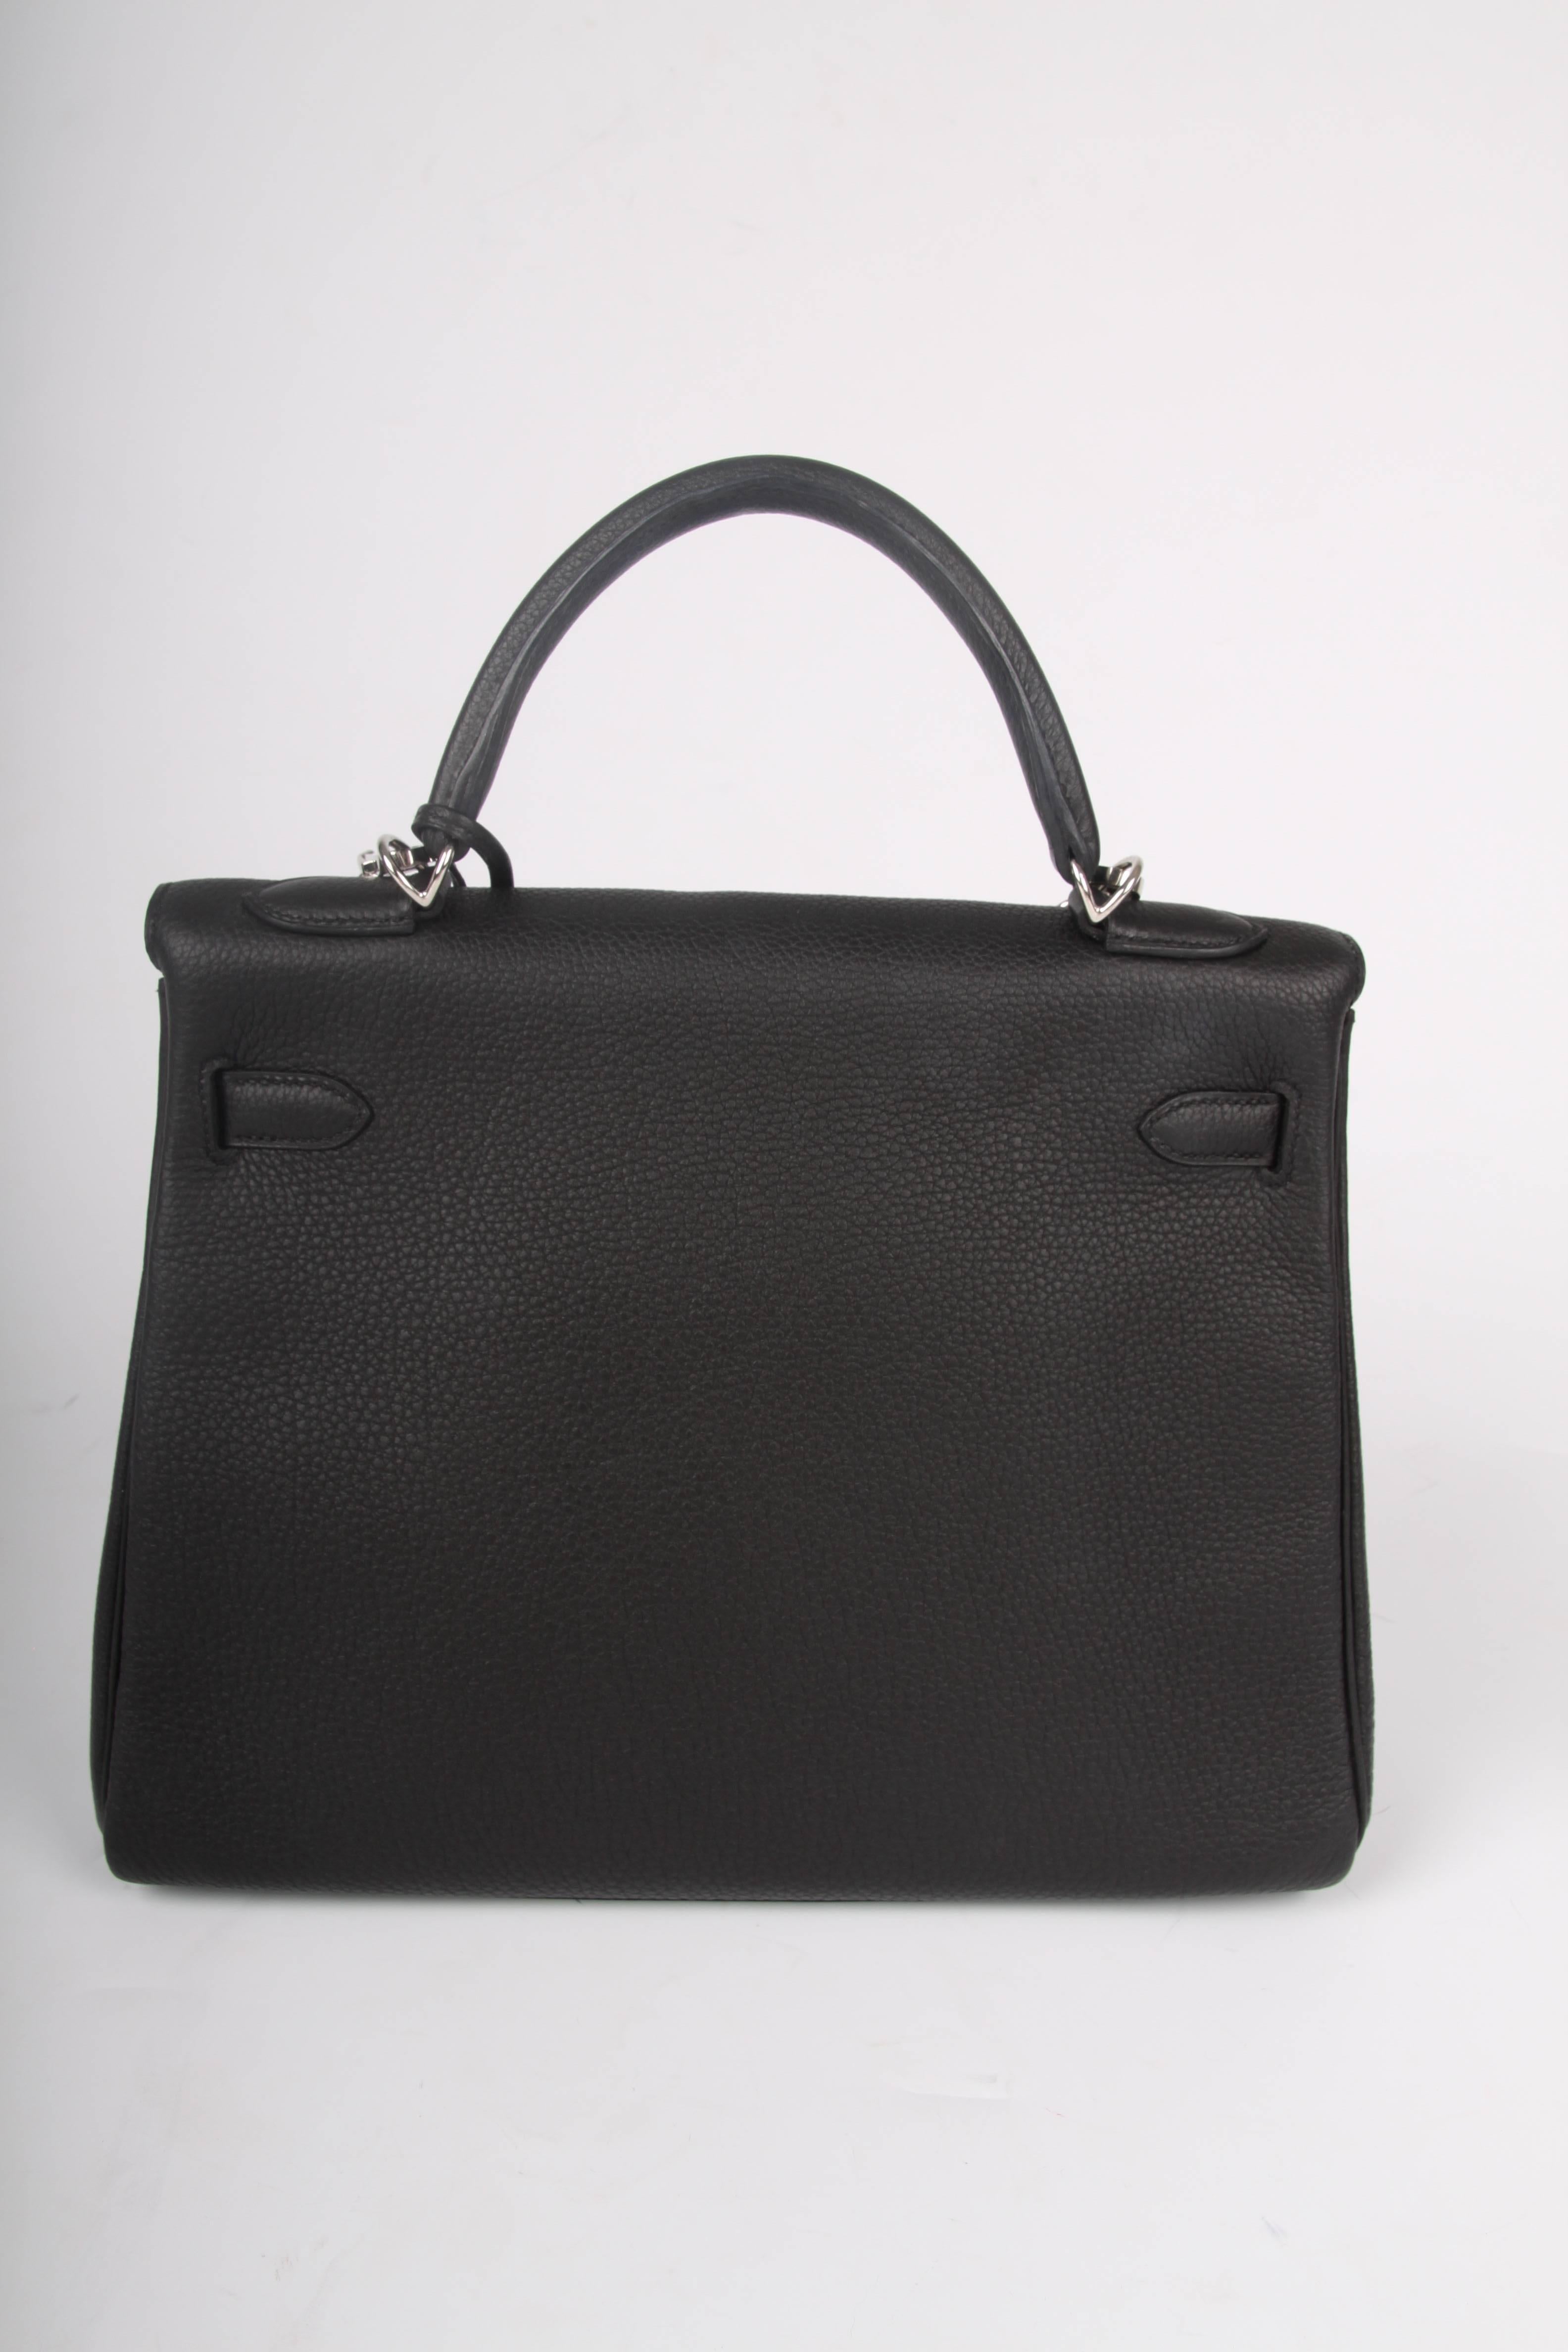 Hermes black Kelly 32 Togo Leather Bag, 2017 2